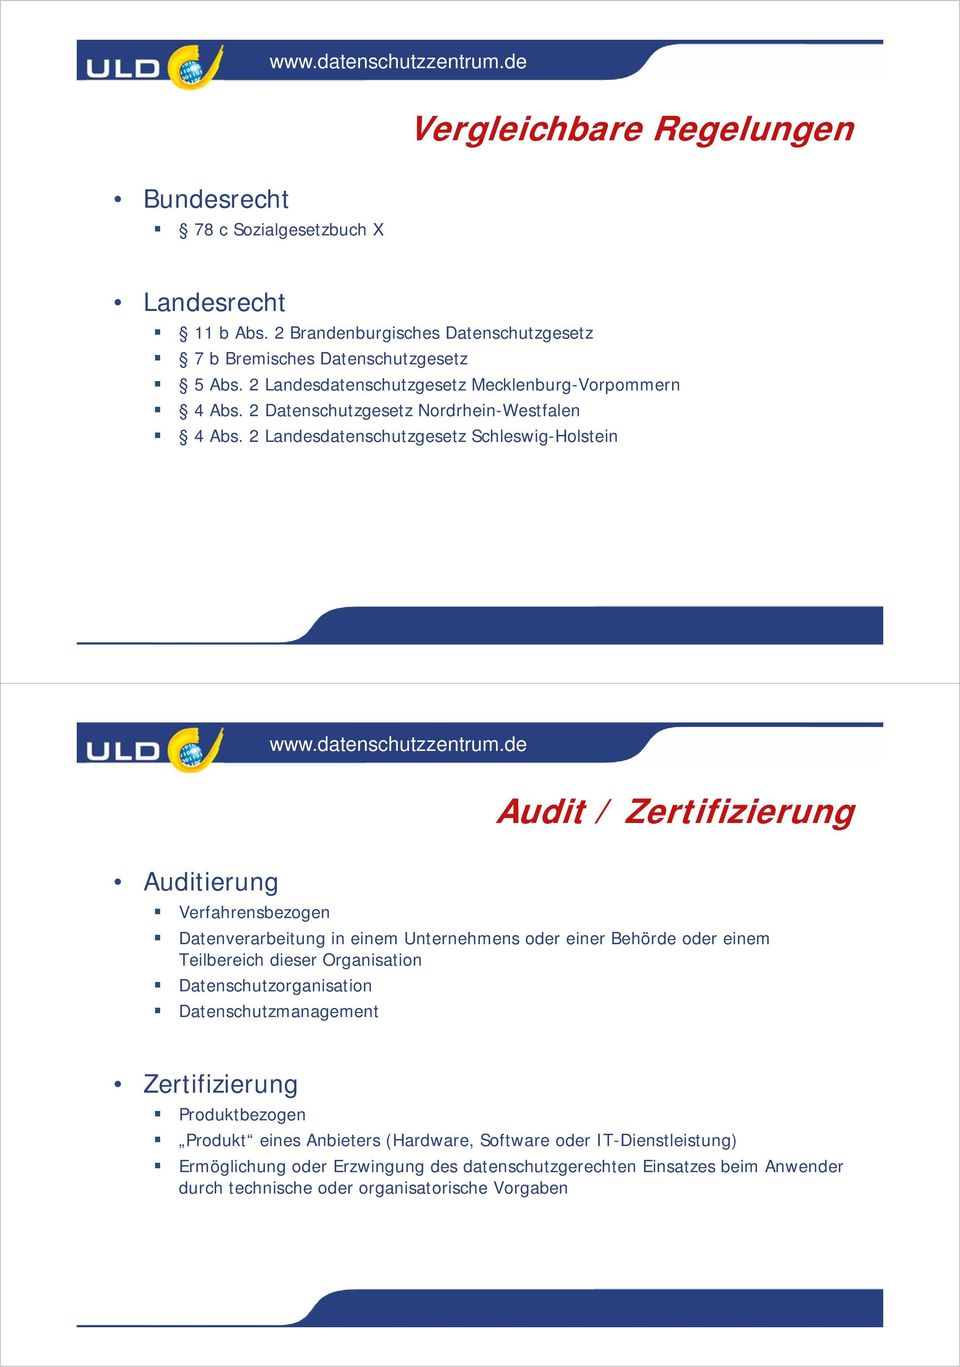 2 Landesdatenschutzgesetz Schleswig-Holstein Audit / Zertifizierung Auditierung Verfahrensbezogen Datenverarbeitung in einem Unternehmens oder einer Behörde oder einem Teilbereich